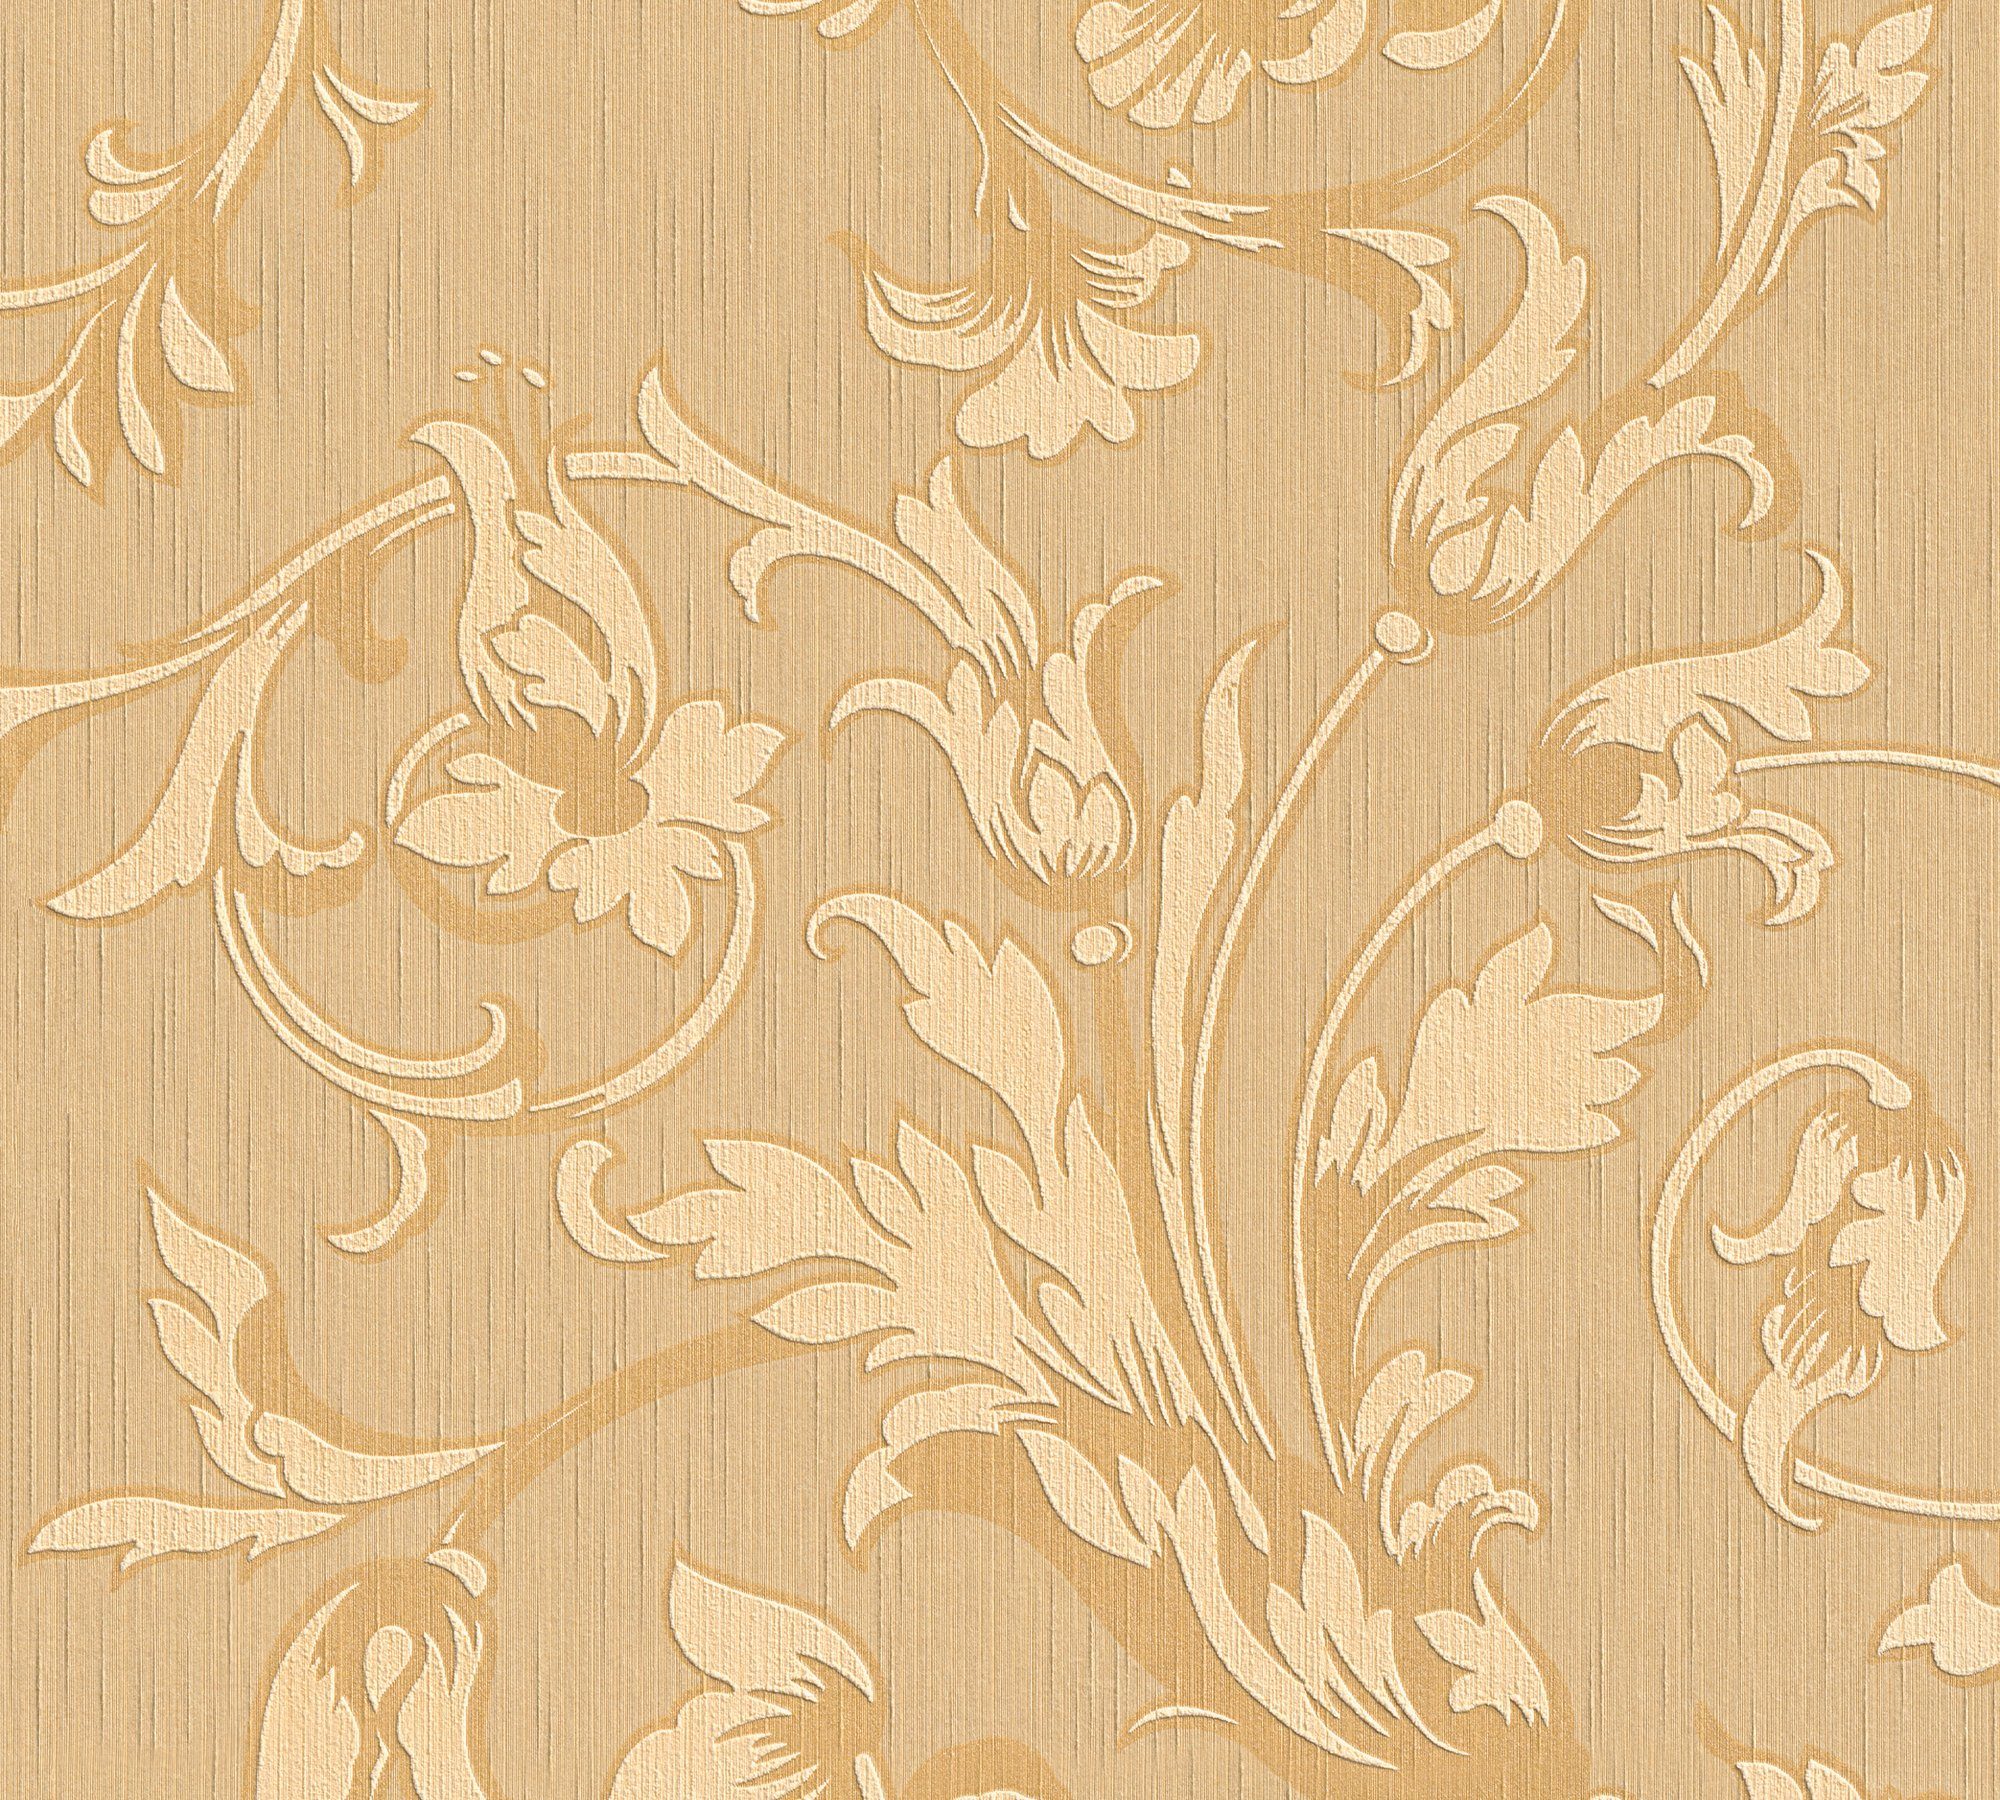 Tessuto, Barock, samtig, Paper Textiltapete Floral orange/beige floral, Architects Blumen Tapete